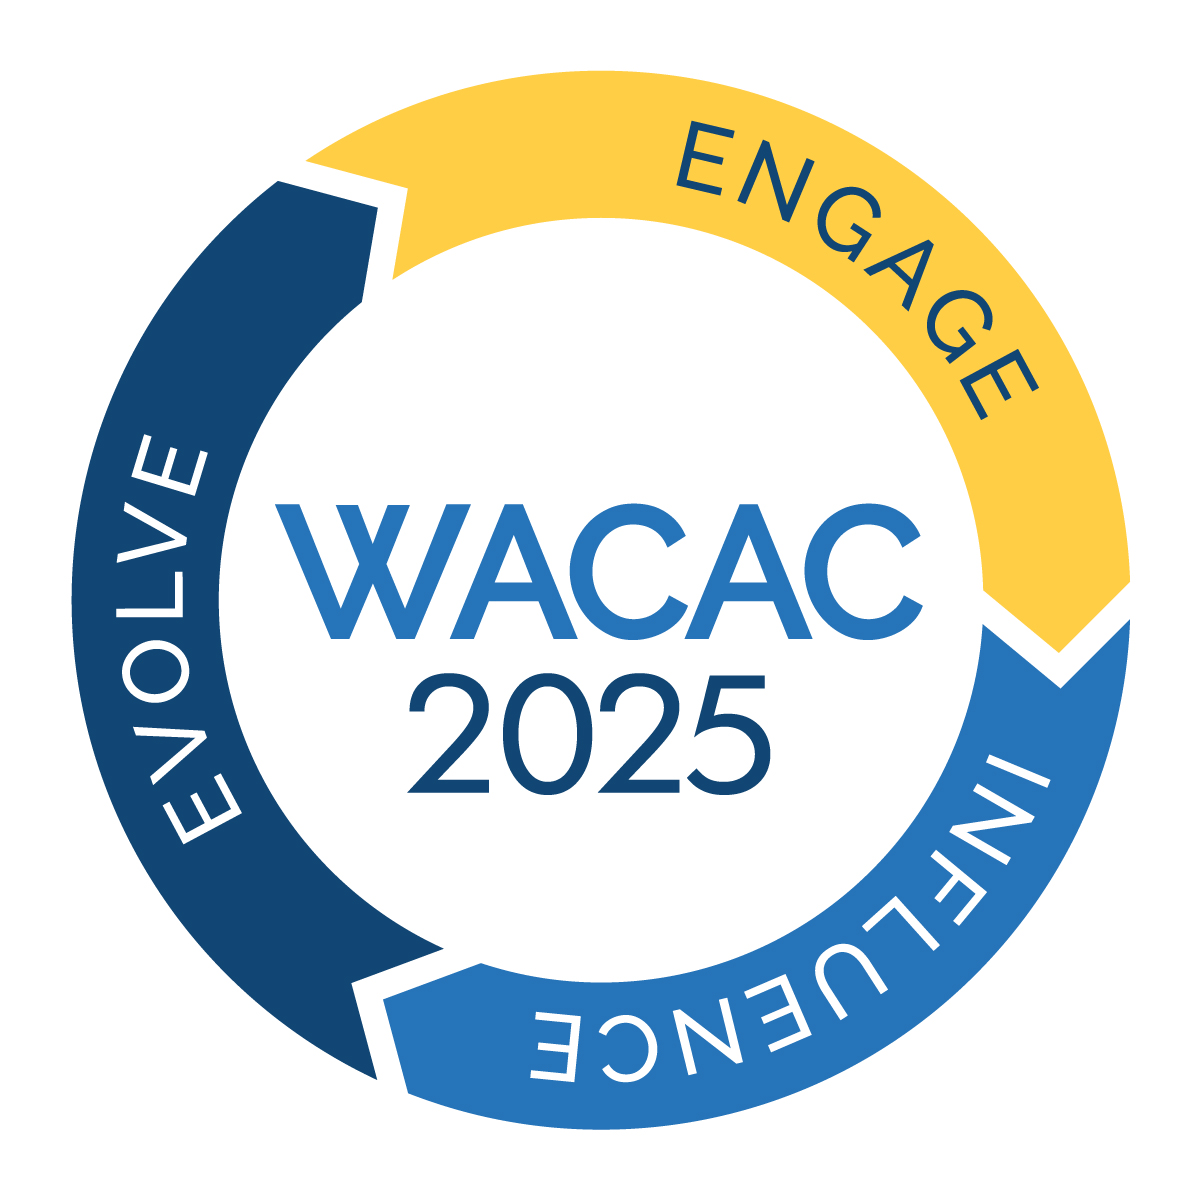 WACAC 2025